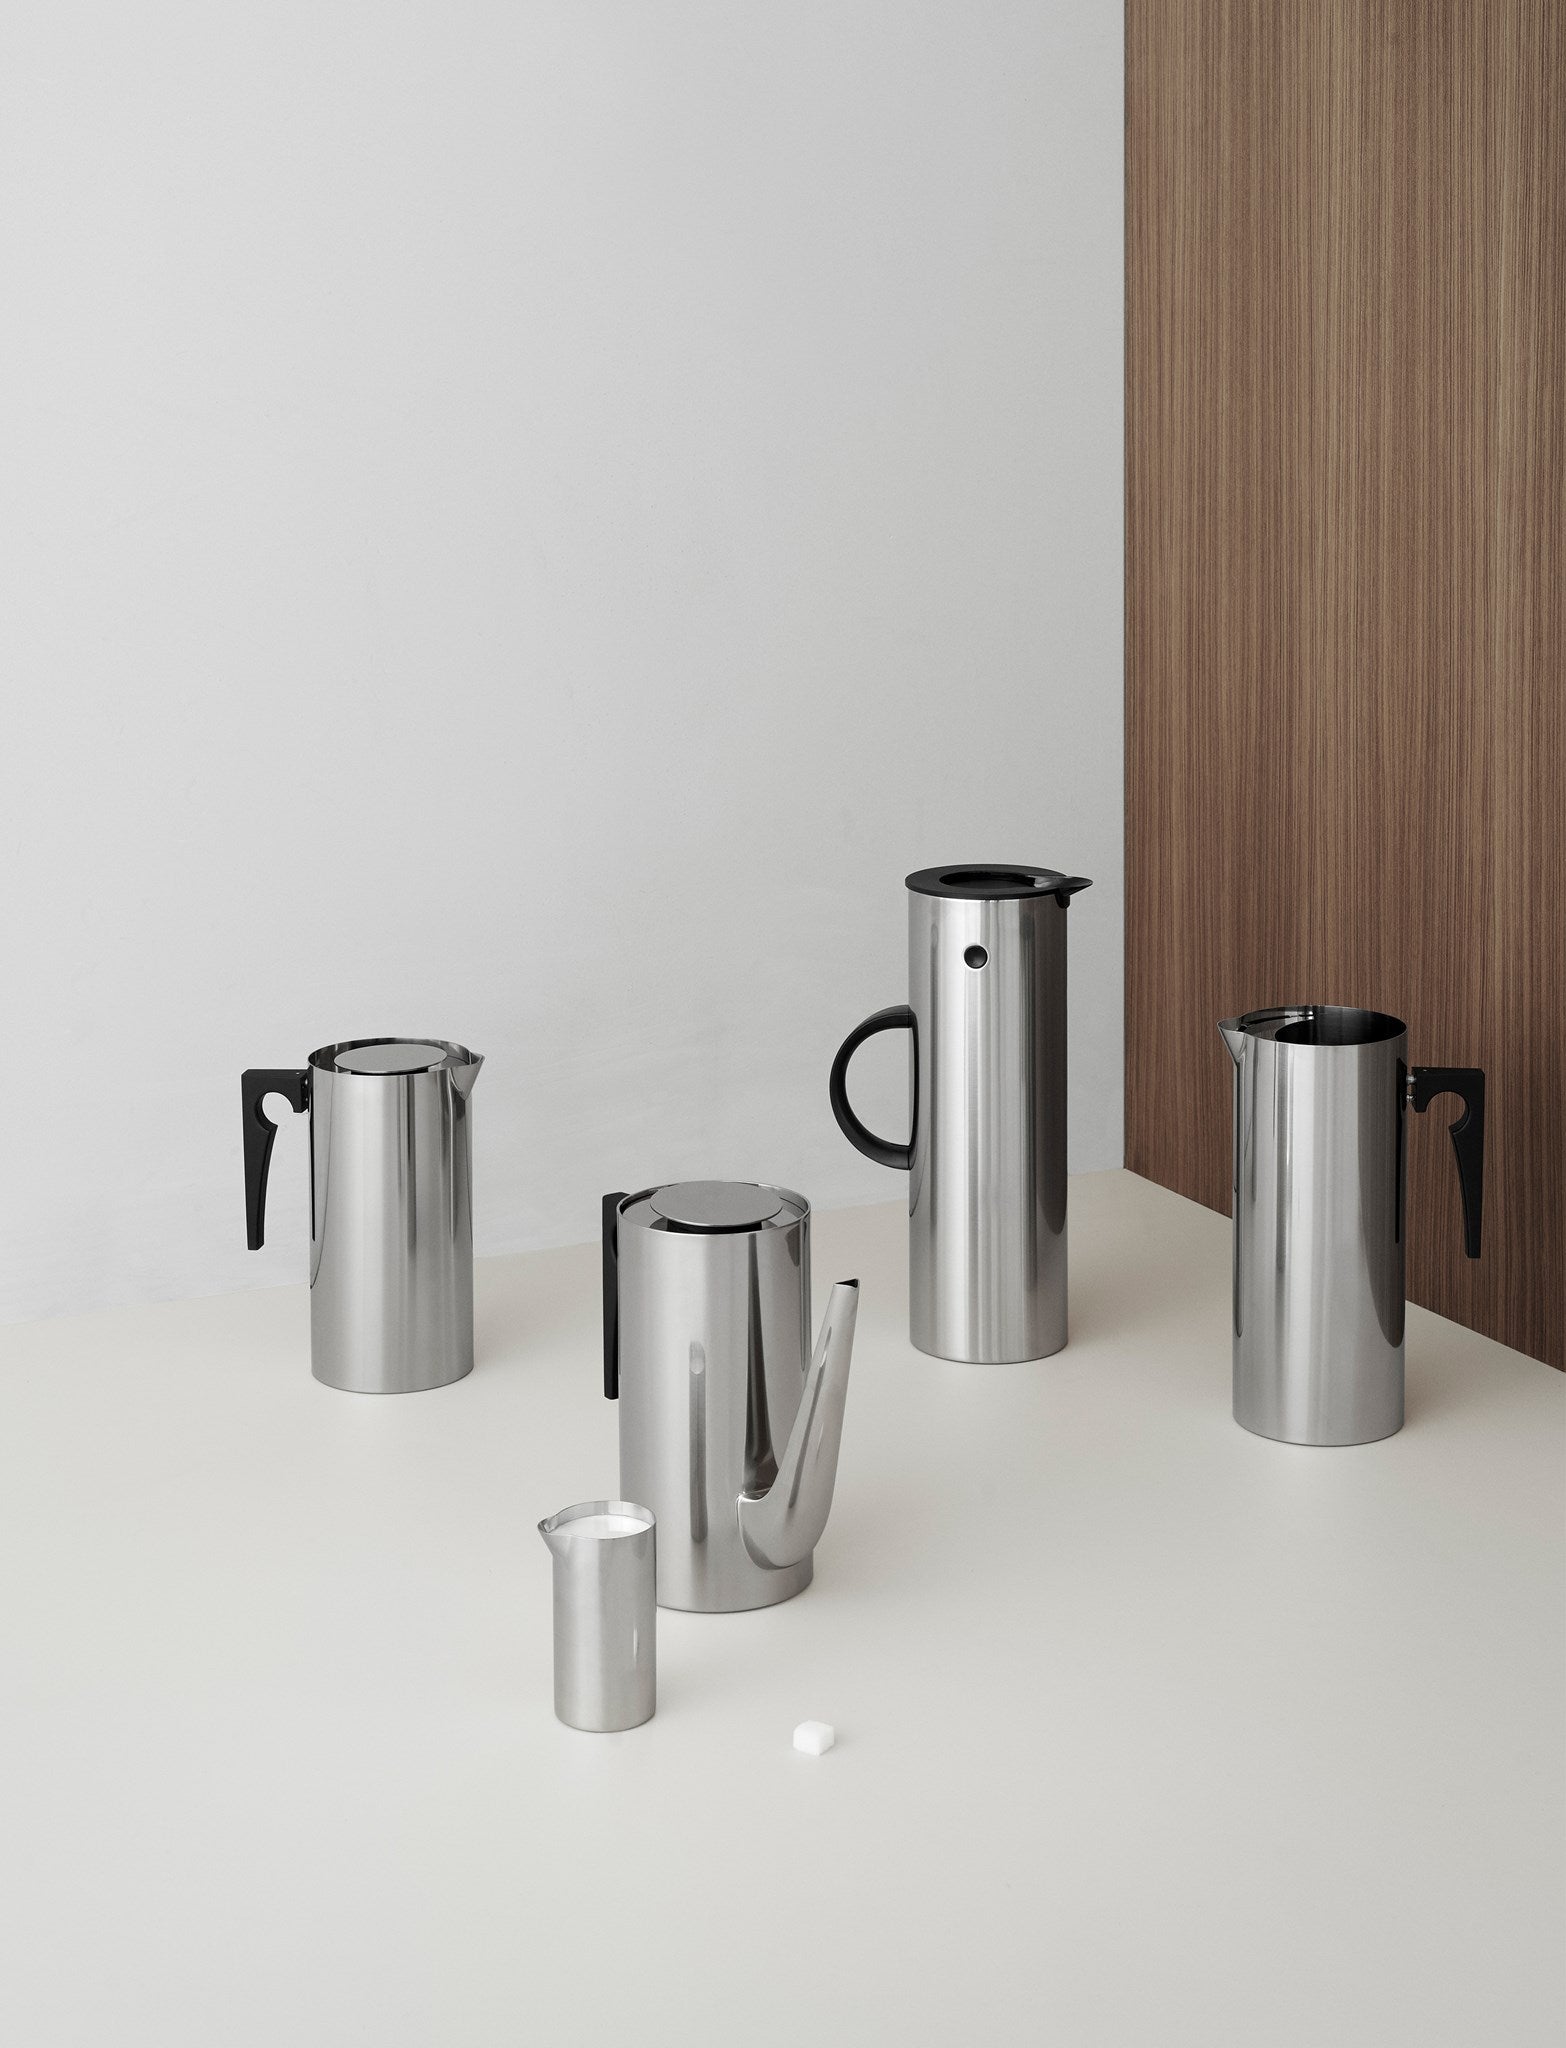 Stelton Arne Jacobsen Kaffekande 1,5 l